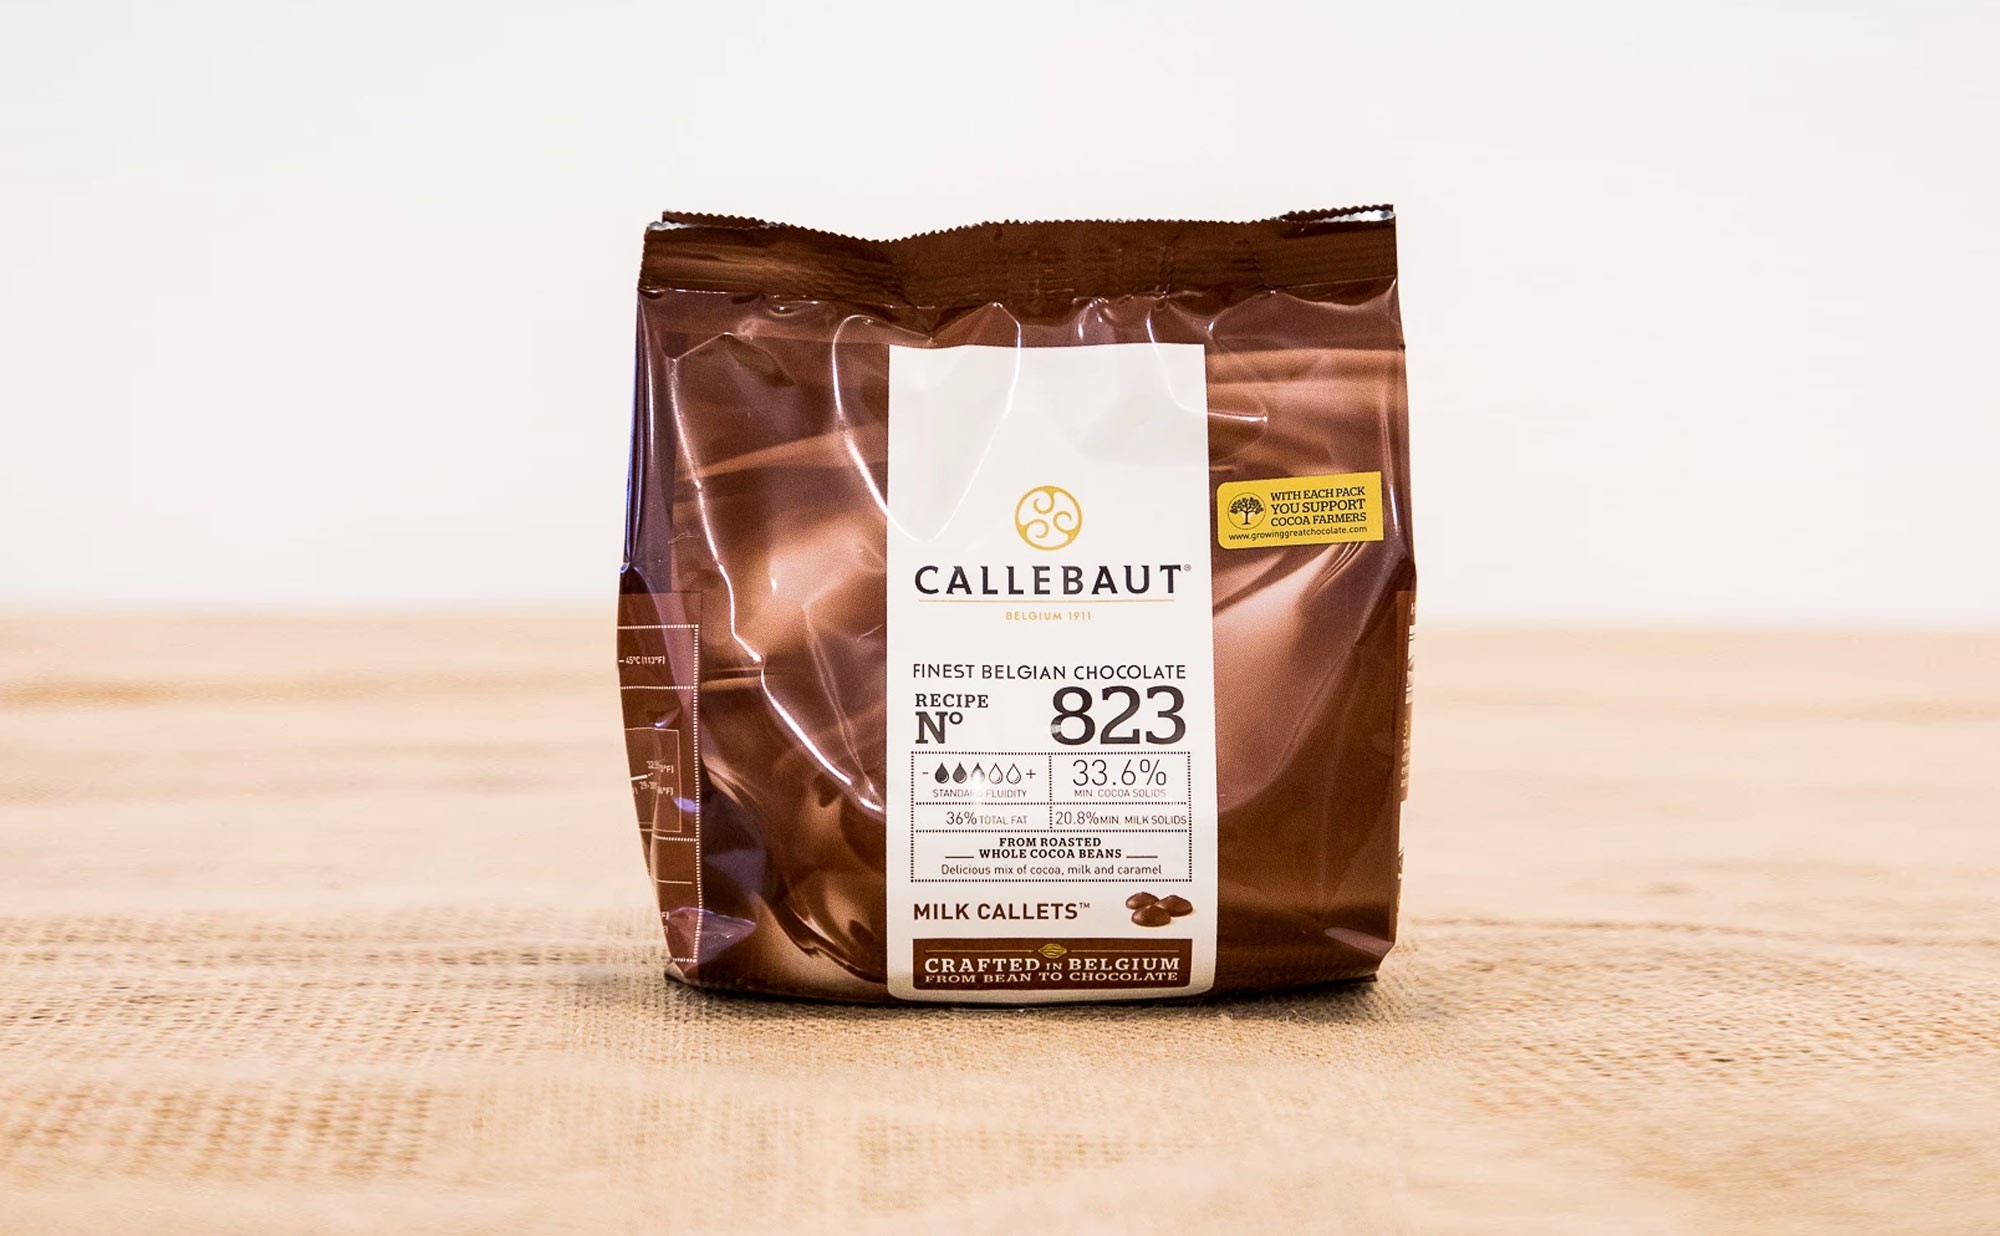 Бельгийский шоколад callebaut купить. Бельгийский шоколад Callebaut. Бельгийский шоколад калибаот. Бельгийский шоколад Каллебаут. Шоколад Руби Каллебаут.